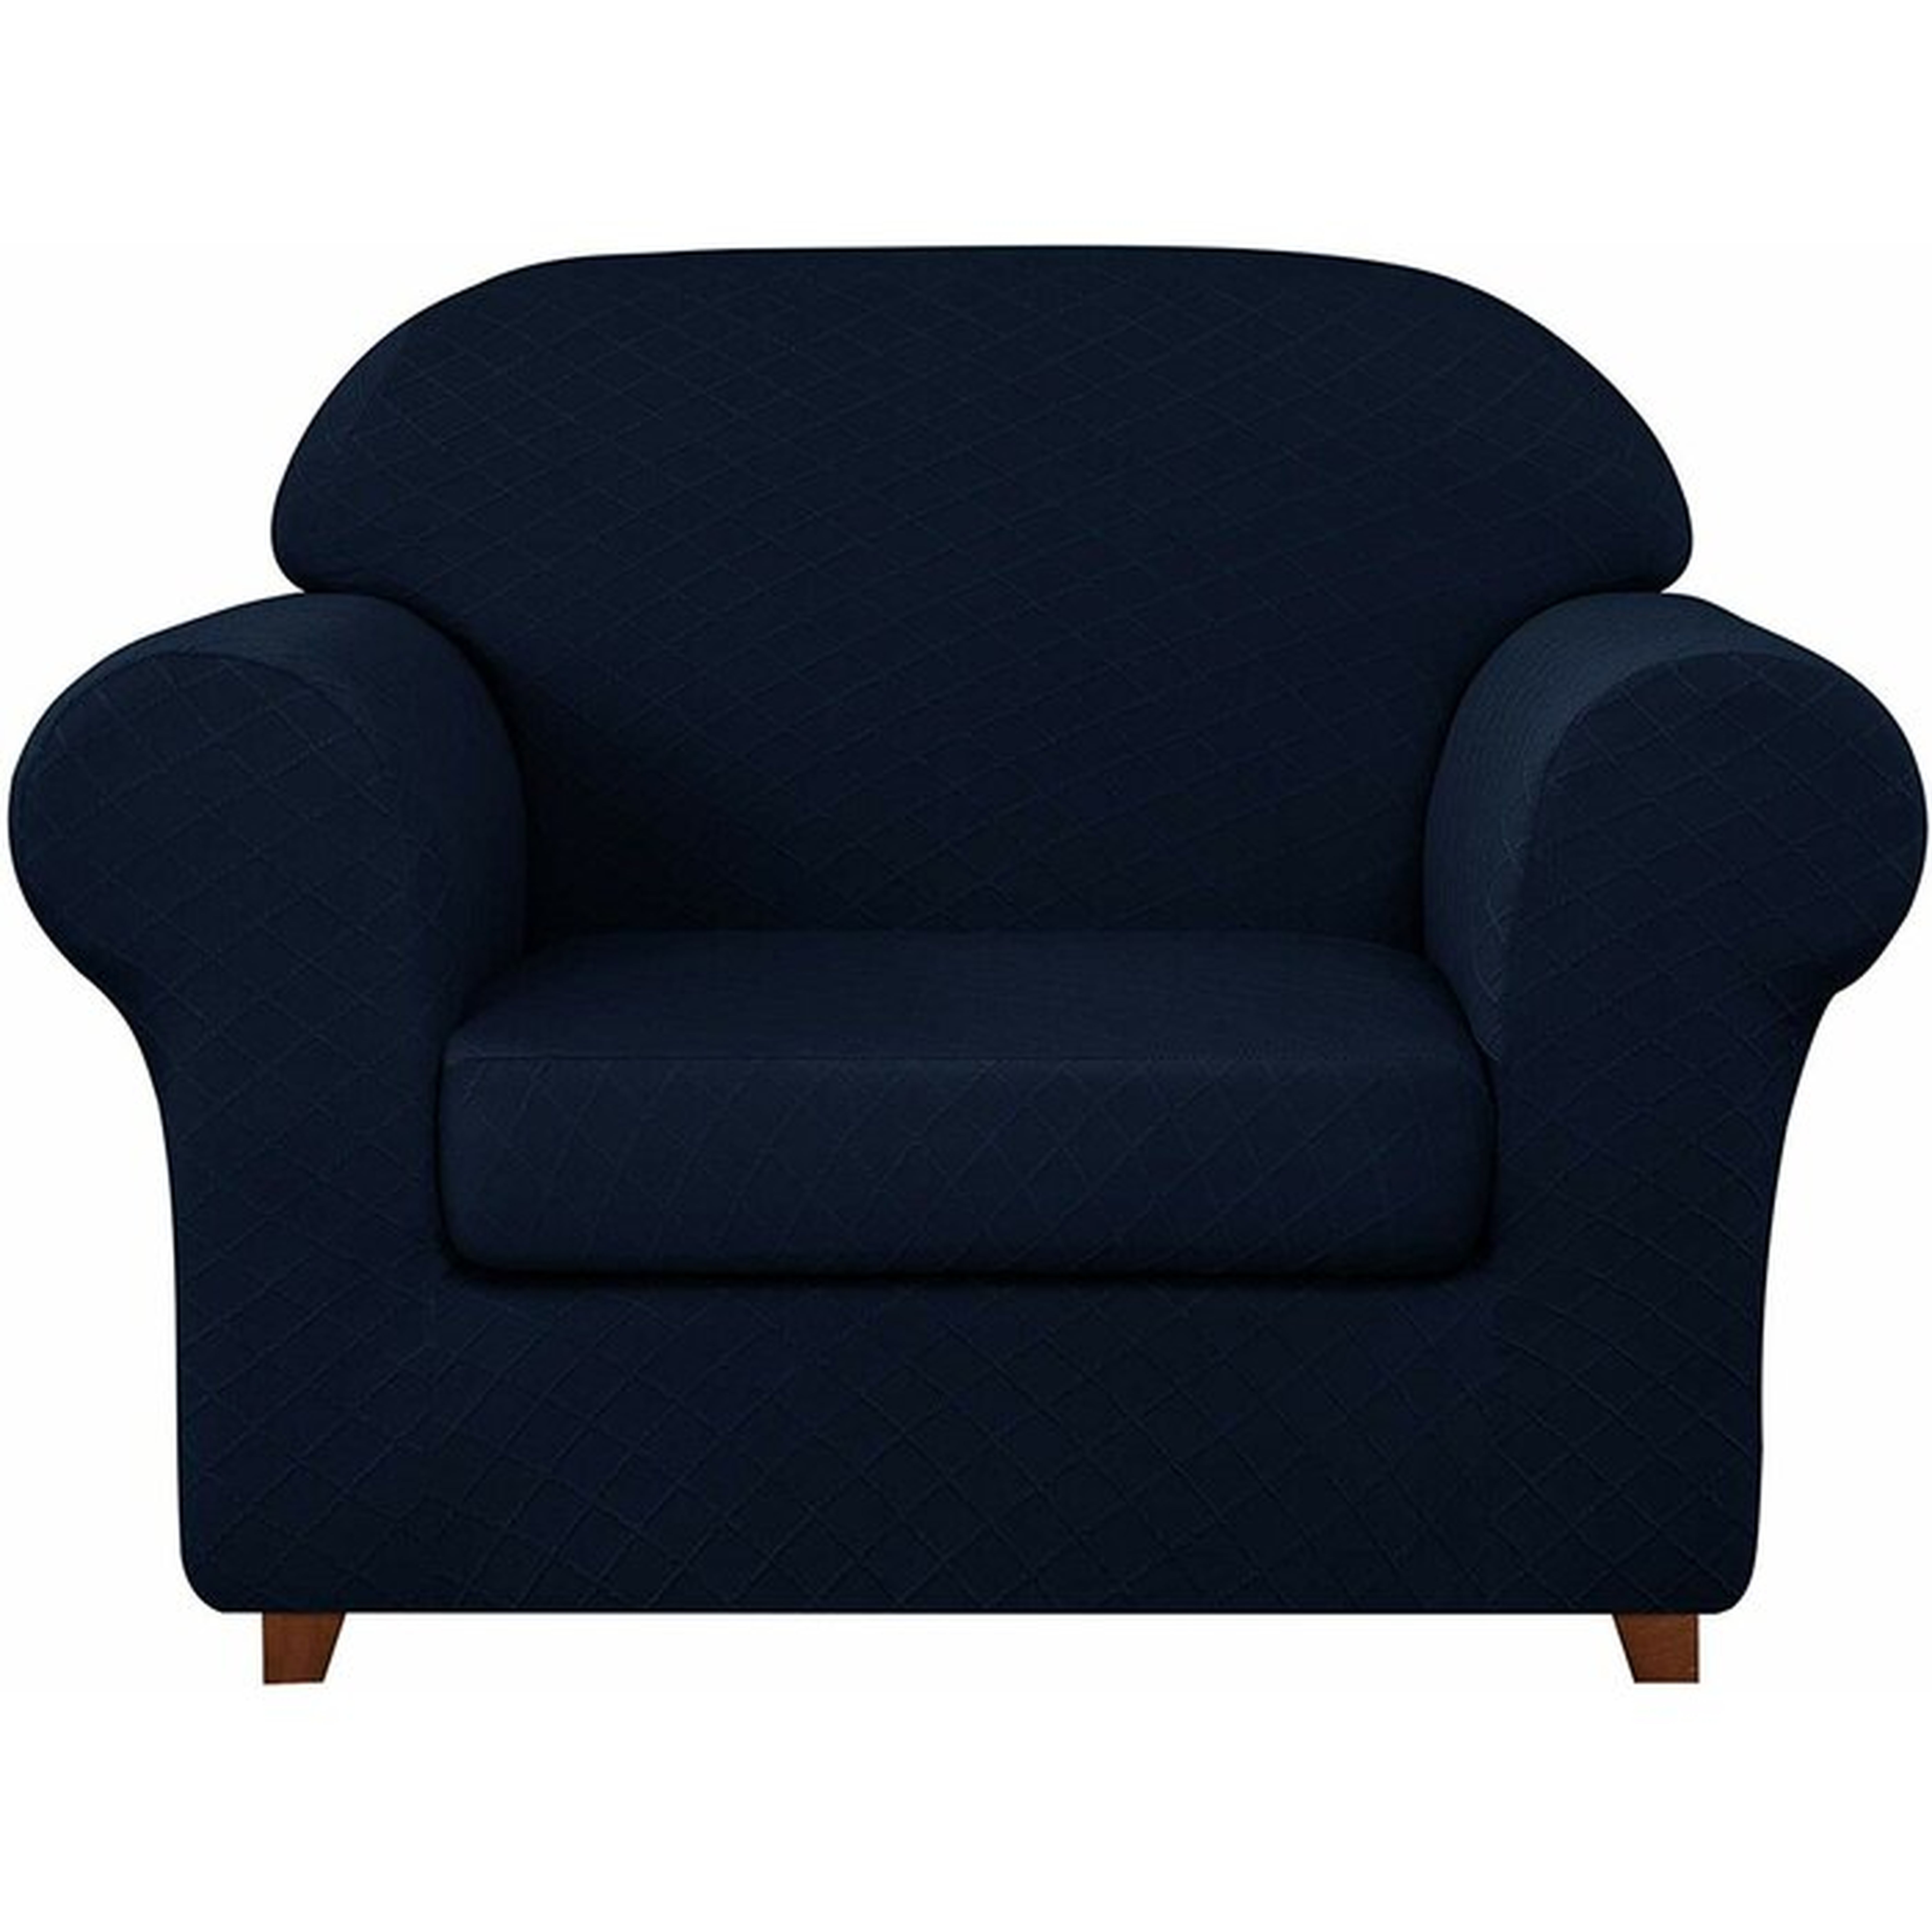 Jacquard Box Cushion Armchair Slipcover - Wayfair